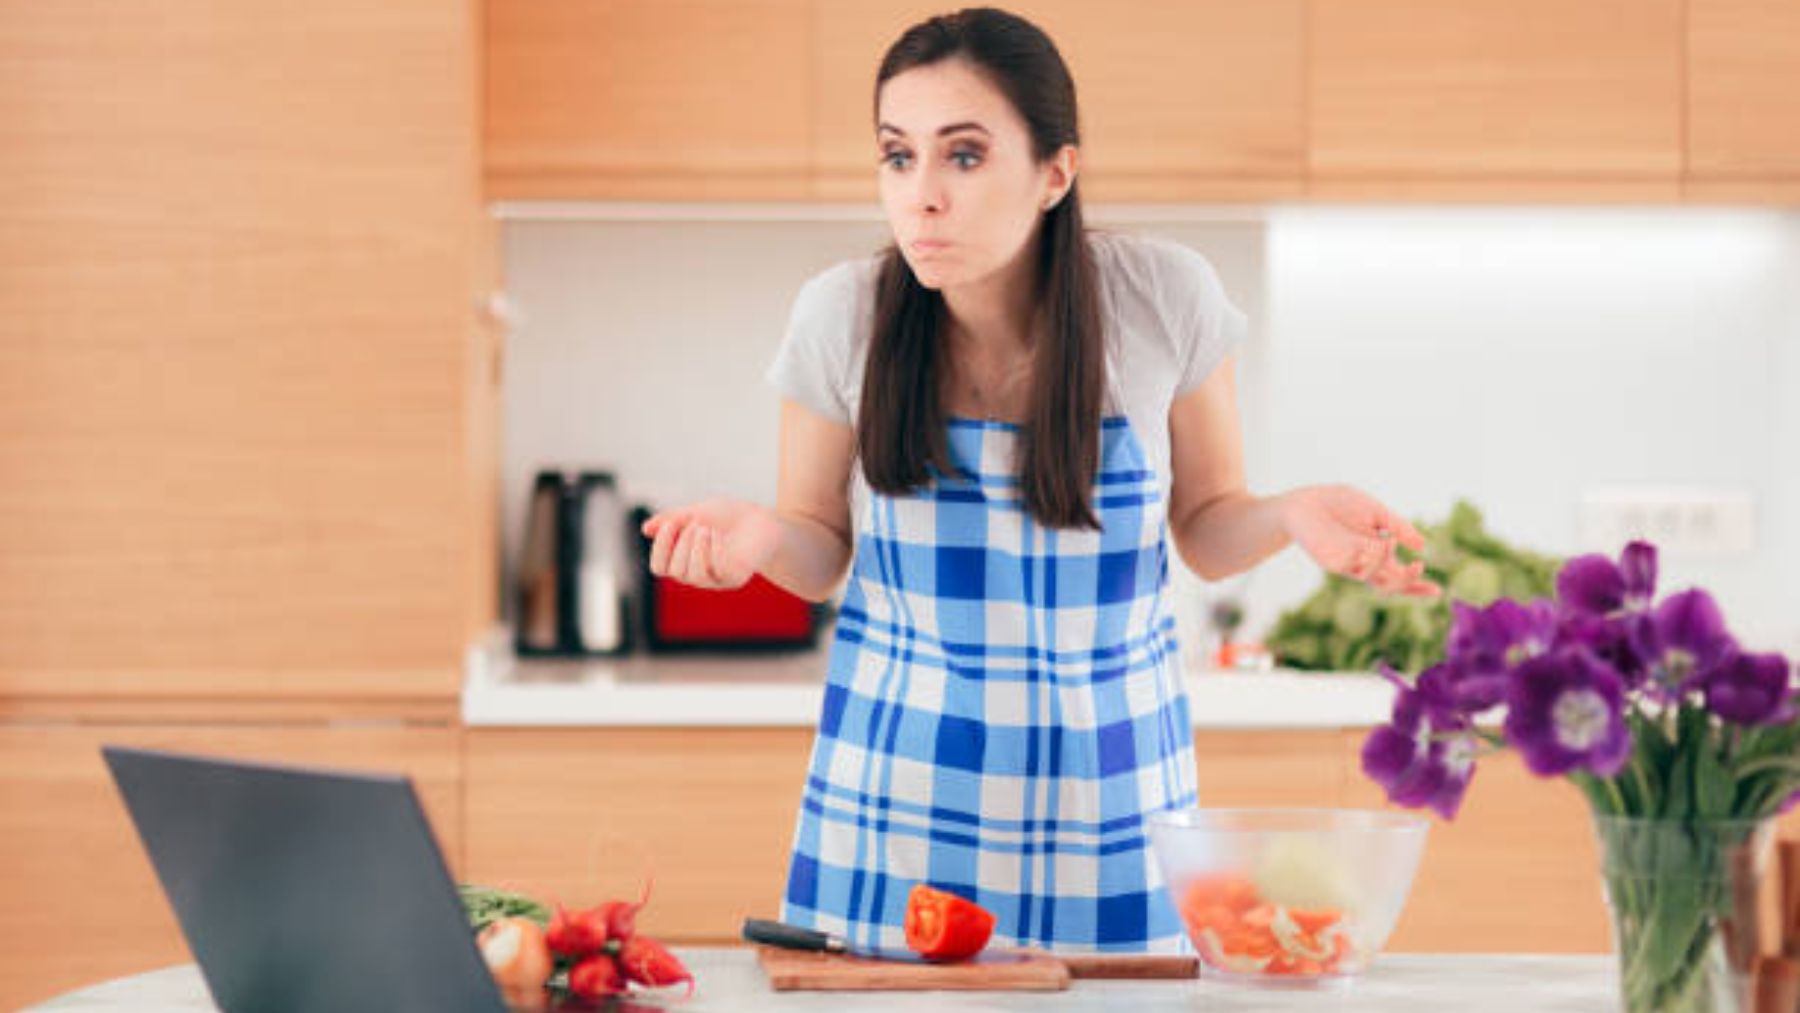 Las 10 cosas que nunca debes hacer en la cocina según los expertos